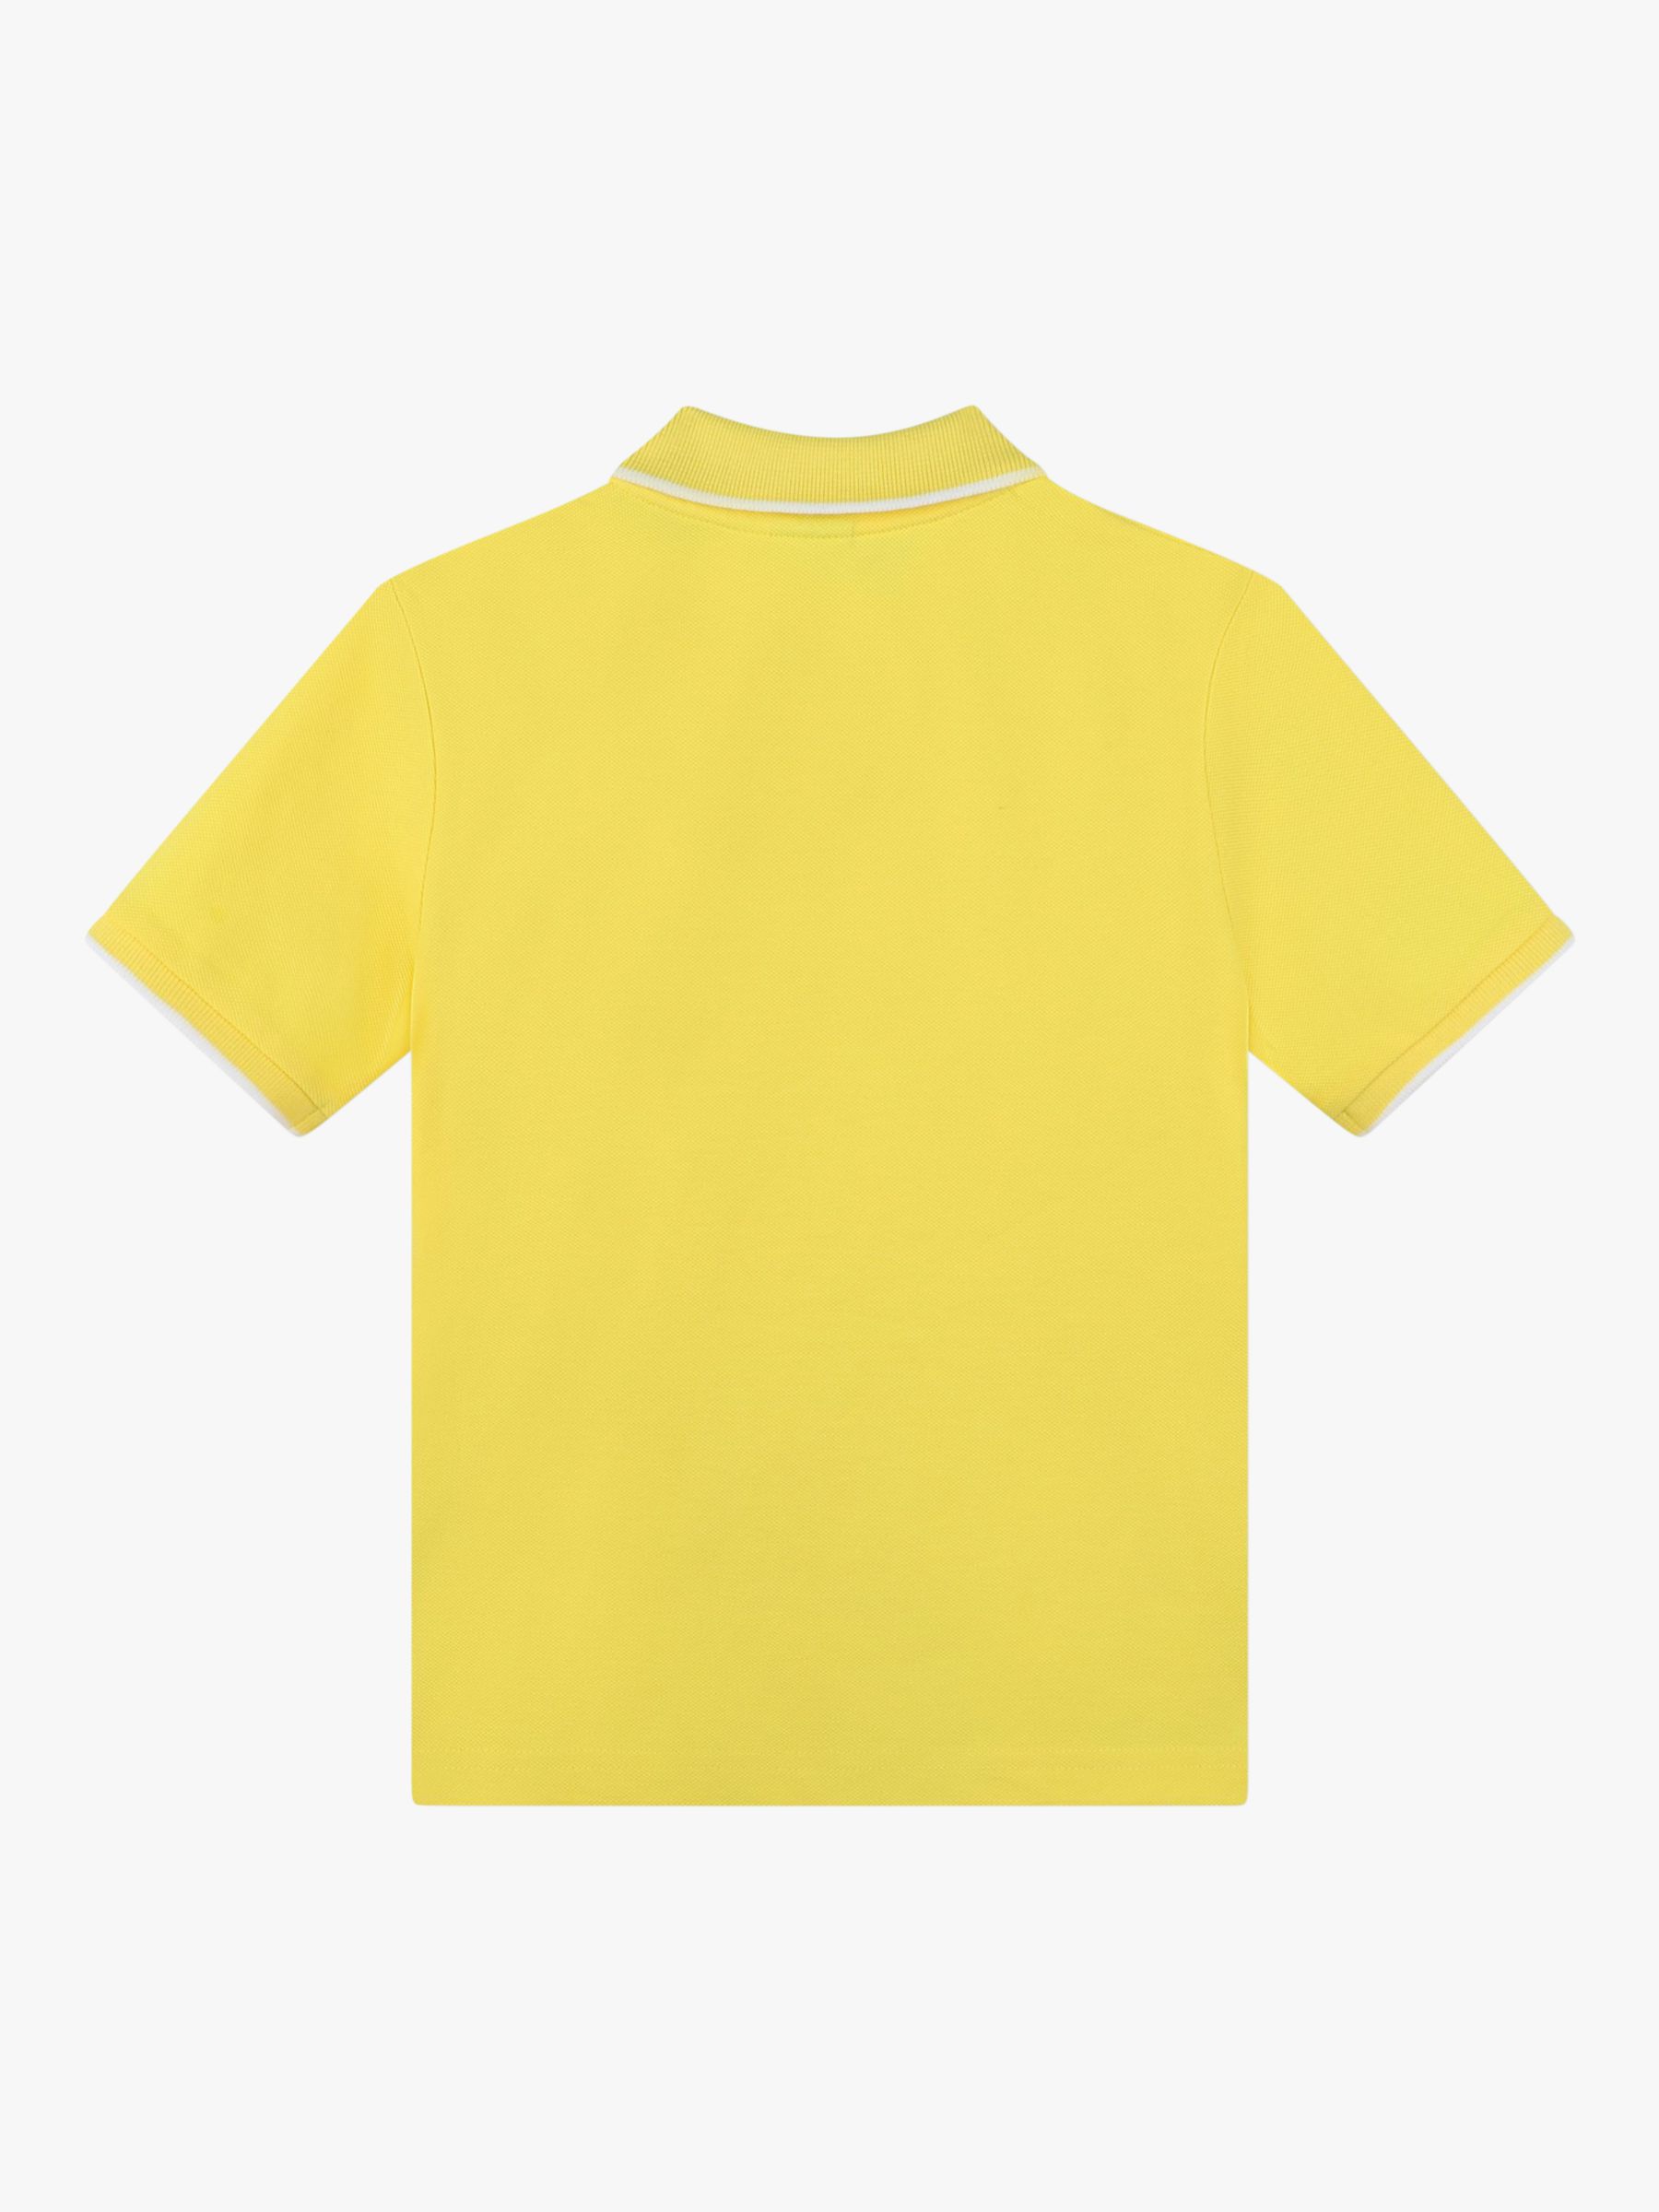 BOSS Kids' Short Sleeve Polo Shirt, Yellow, 4 years